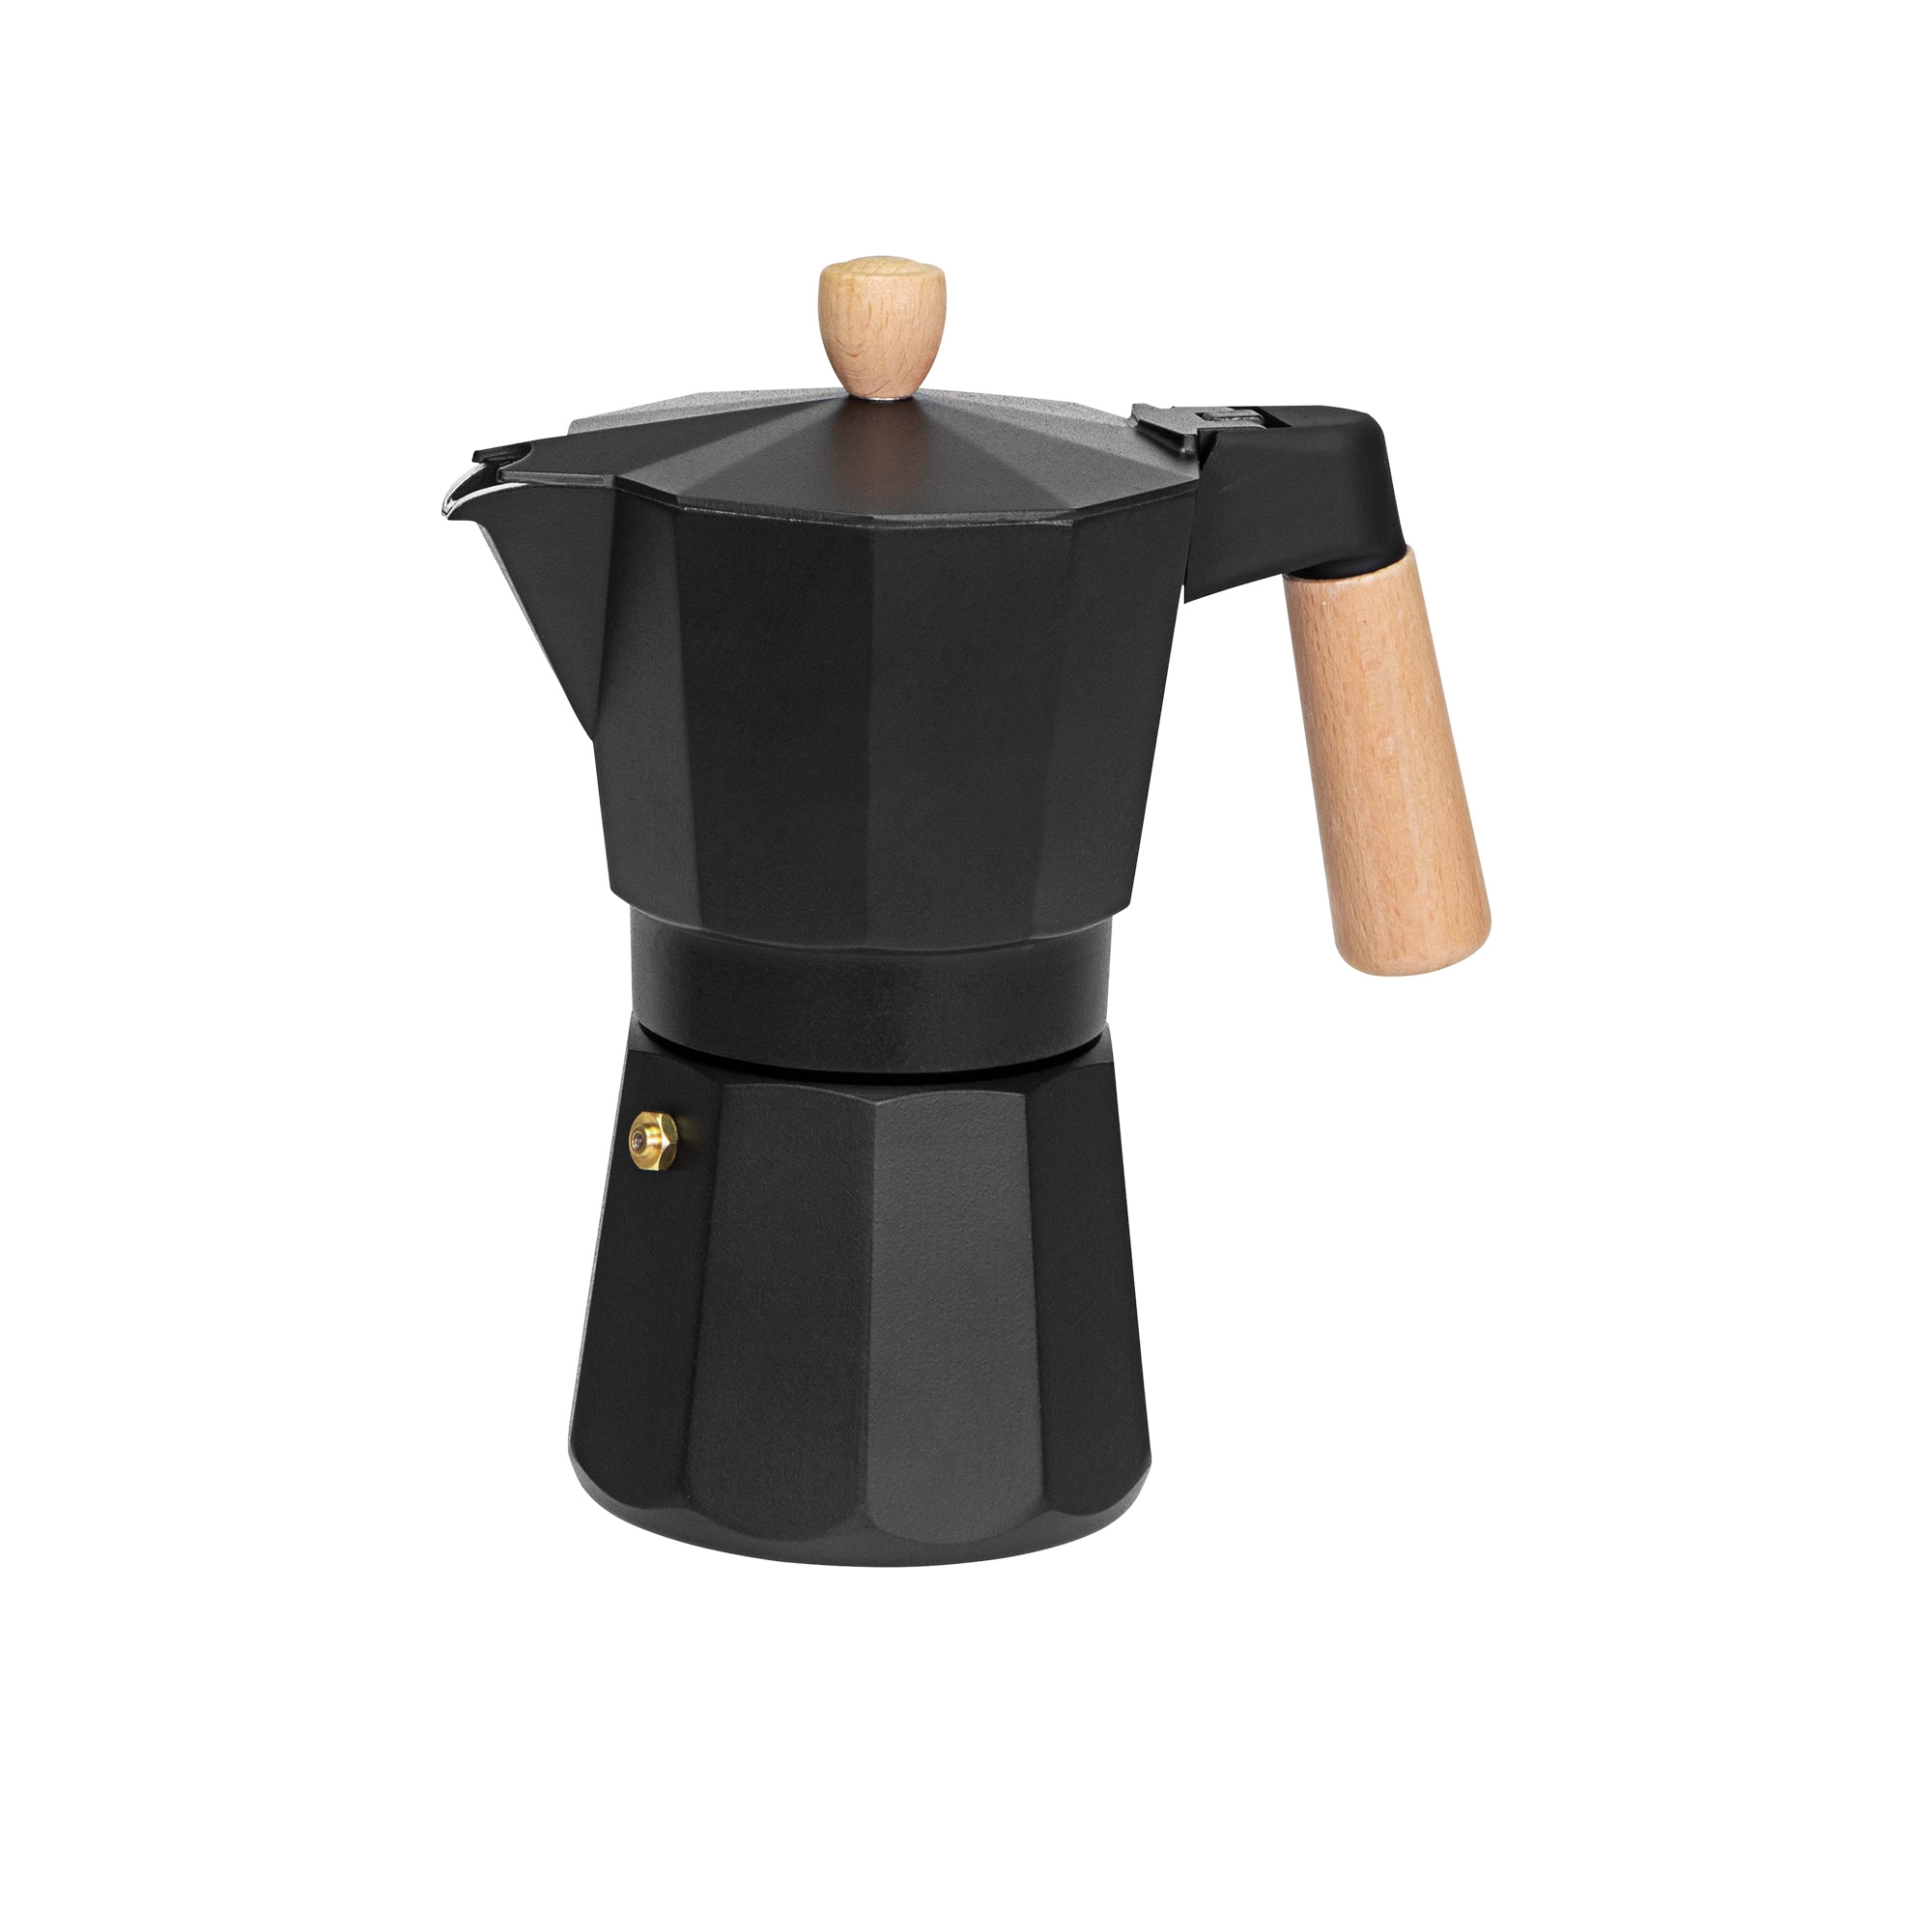 Avanti Malmo Espresso Maker 6 Cup Image 1